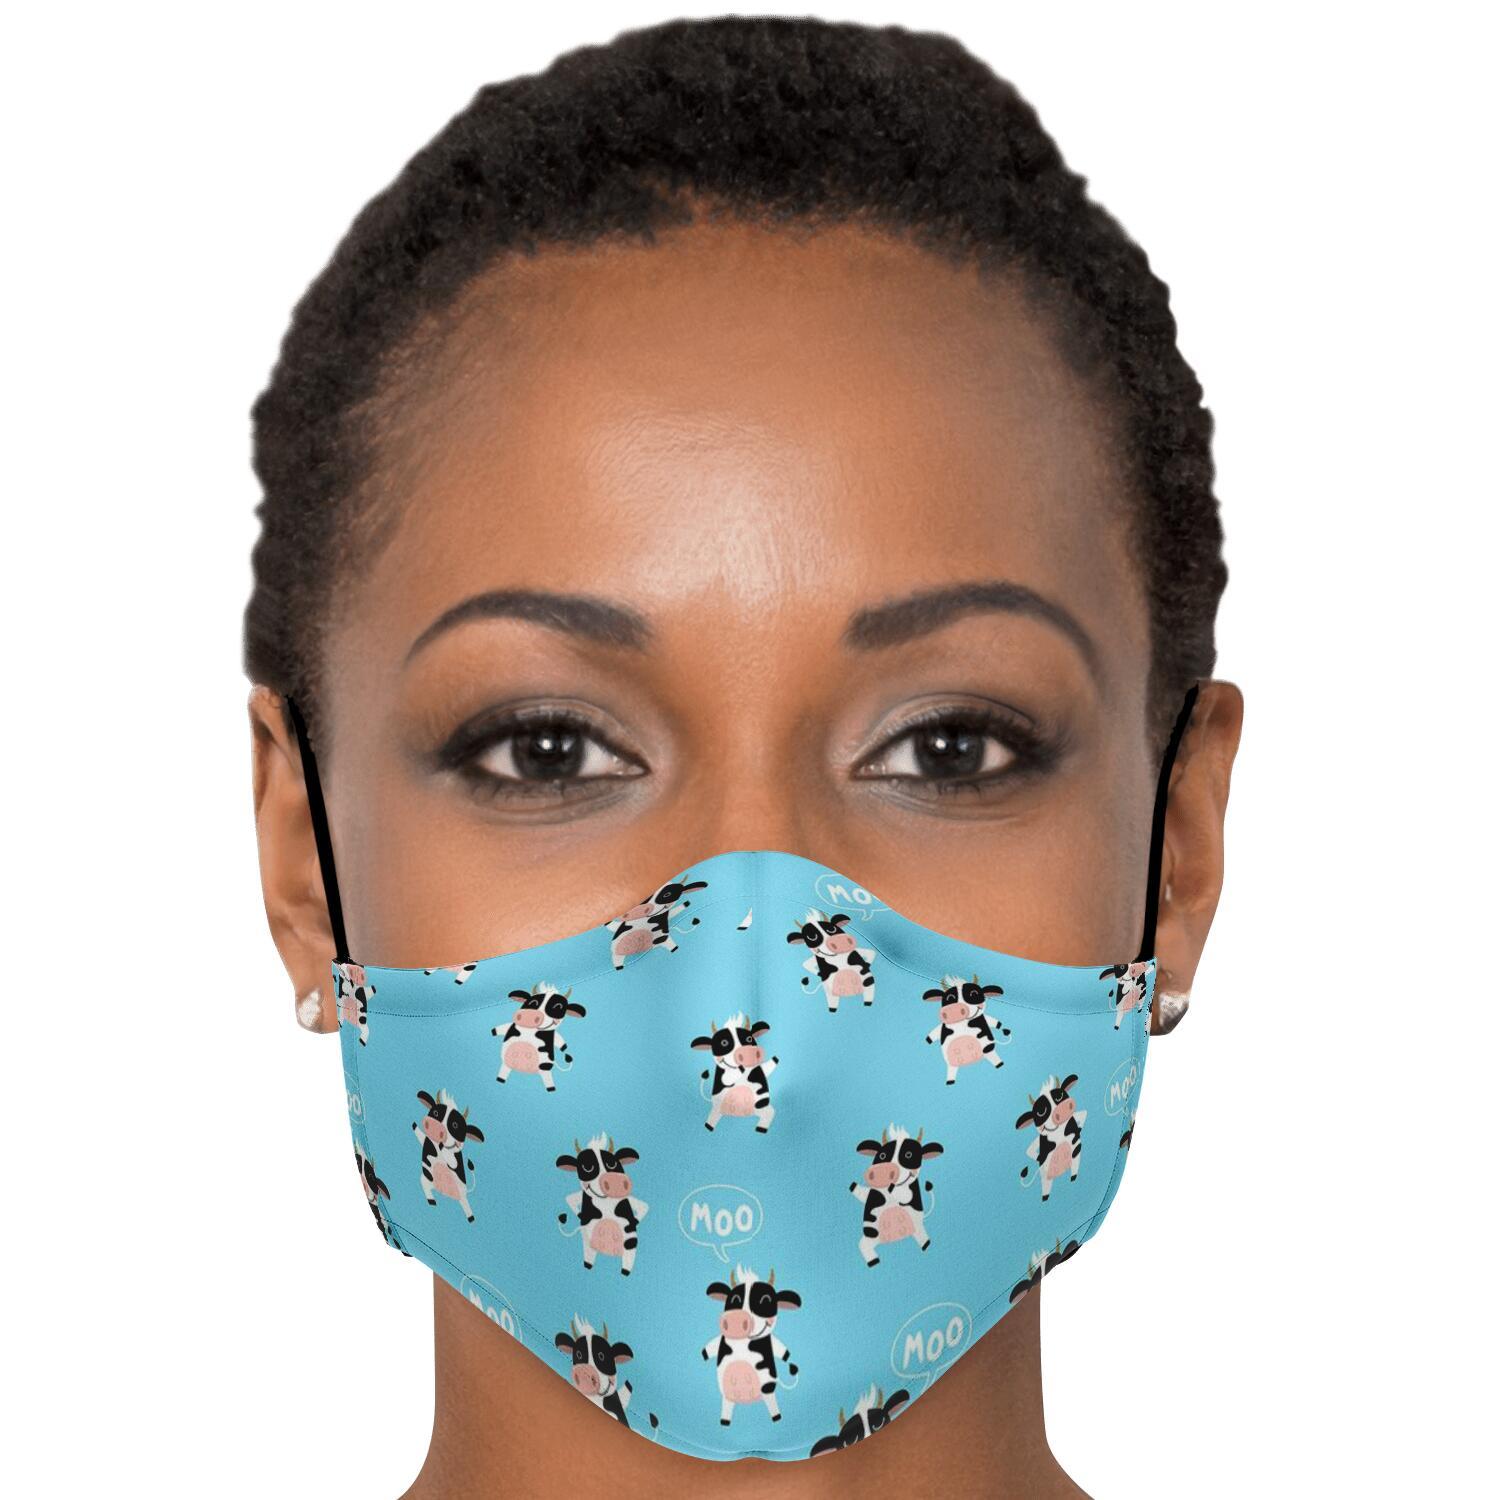 3pcs - Adult Fashion Face Mask / +$10 - 15pcs - PM 2.5 Carbon Filters Official COW PRINT Merch